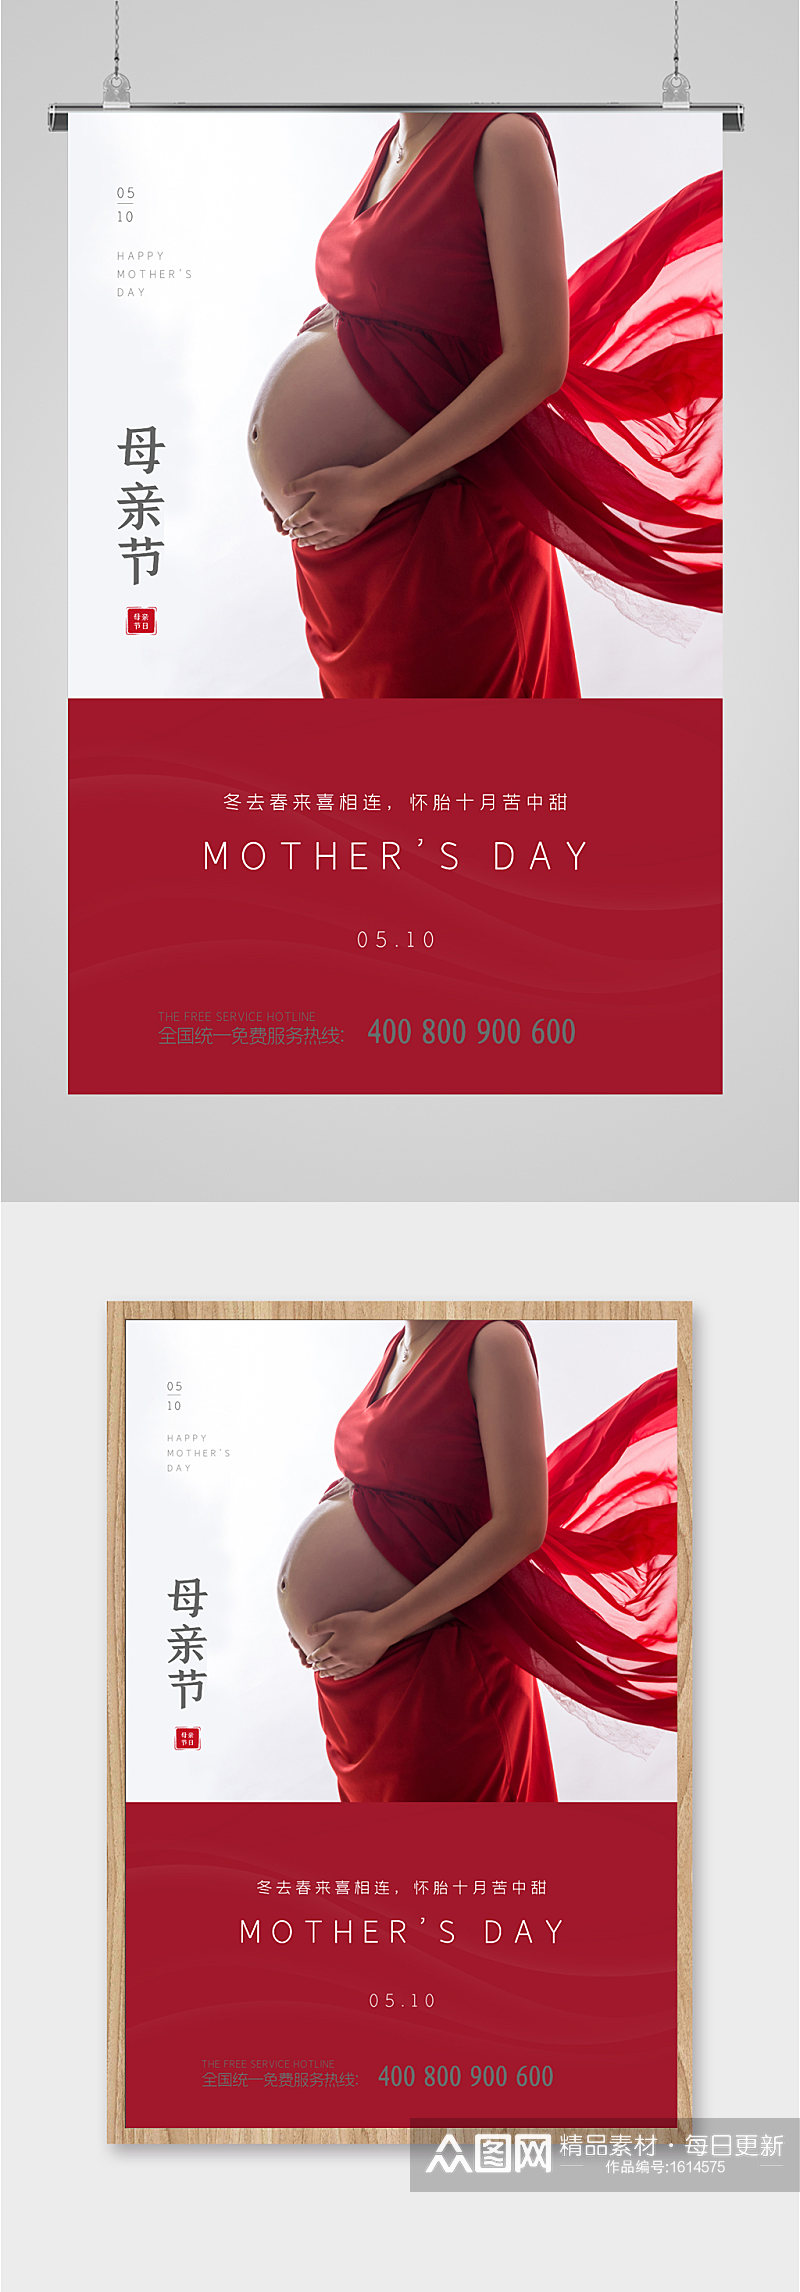 伟大母亲节日红色简约海报素材